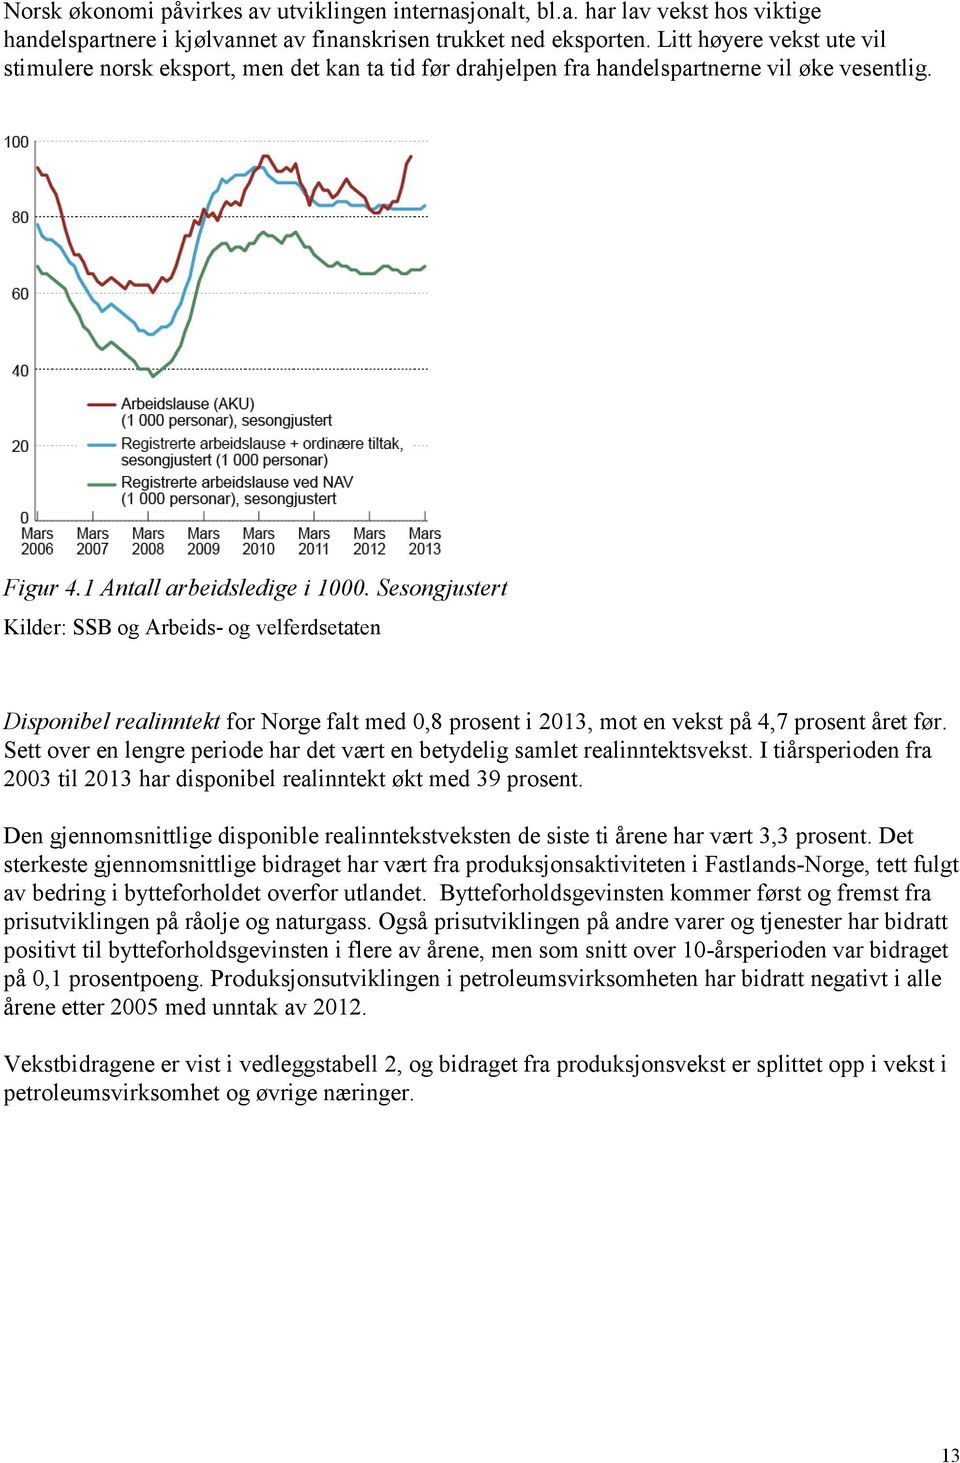 Sesongjustert Kilder: SSB og Arbeids- og velferdsetaten Disponibel realinntekt for Norge falt med 0,8 prosent i 2013, mot en vekst på 4,7 prosent året før.